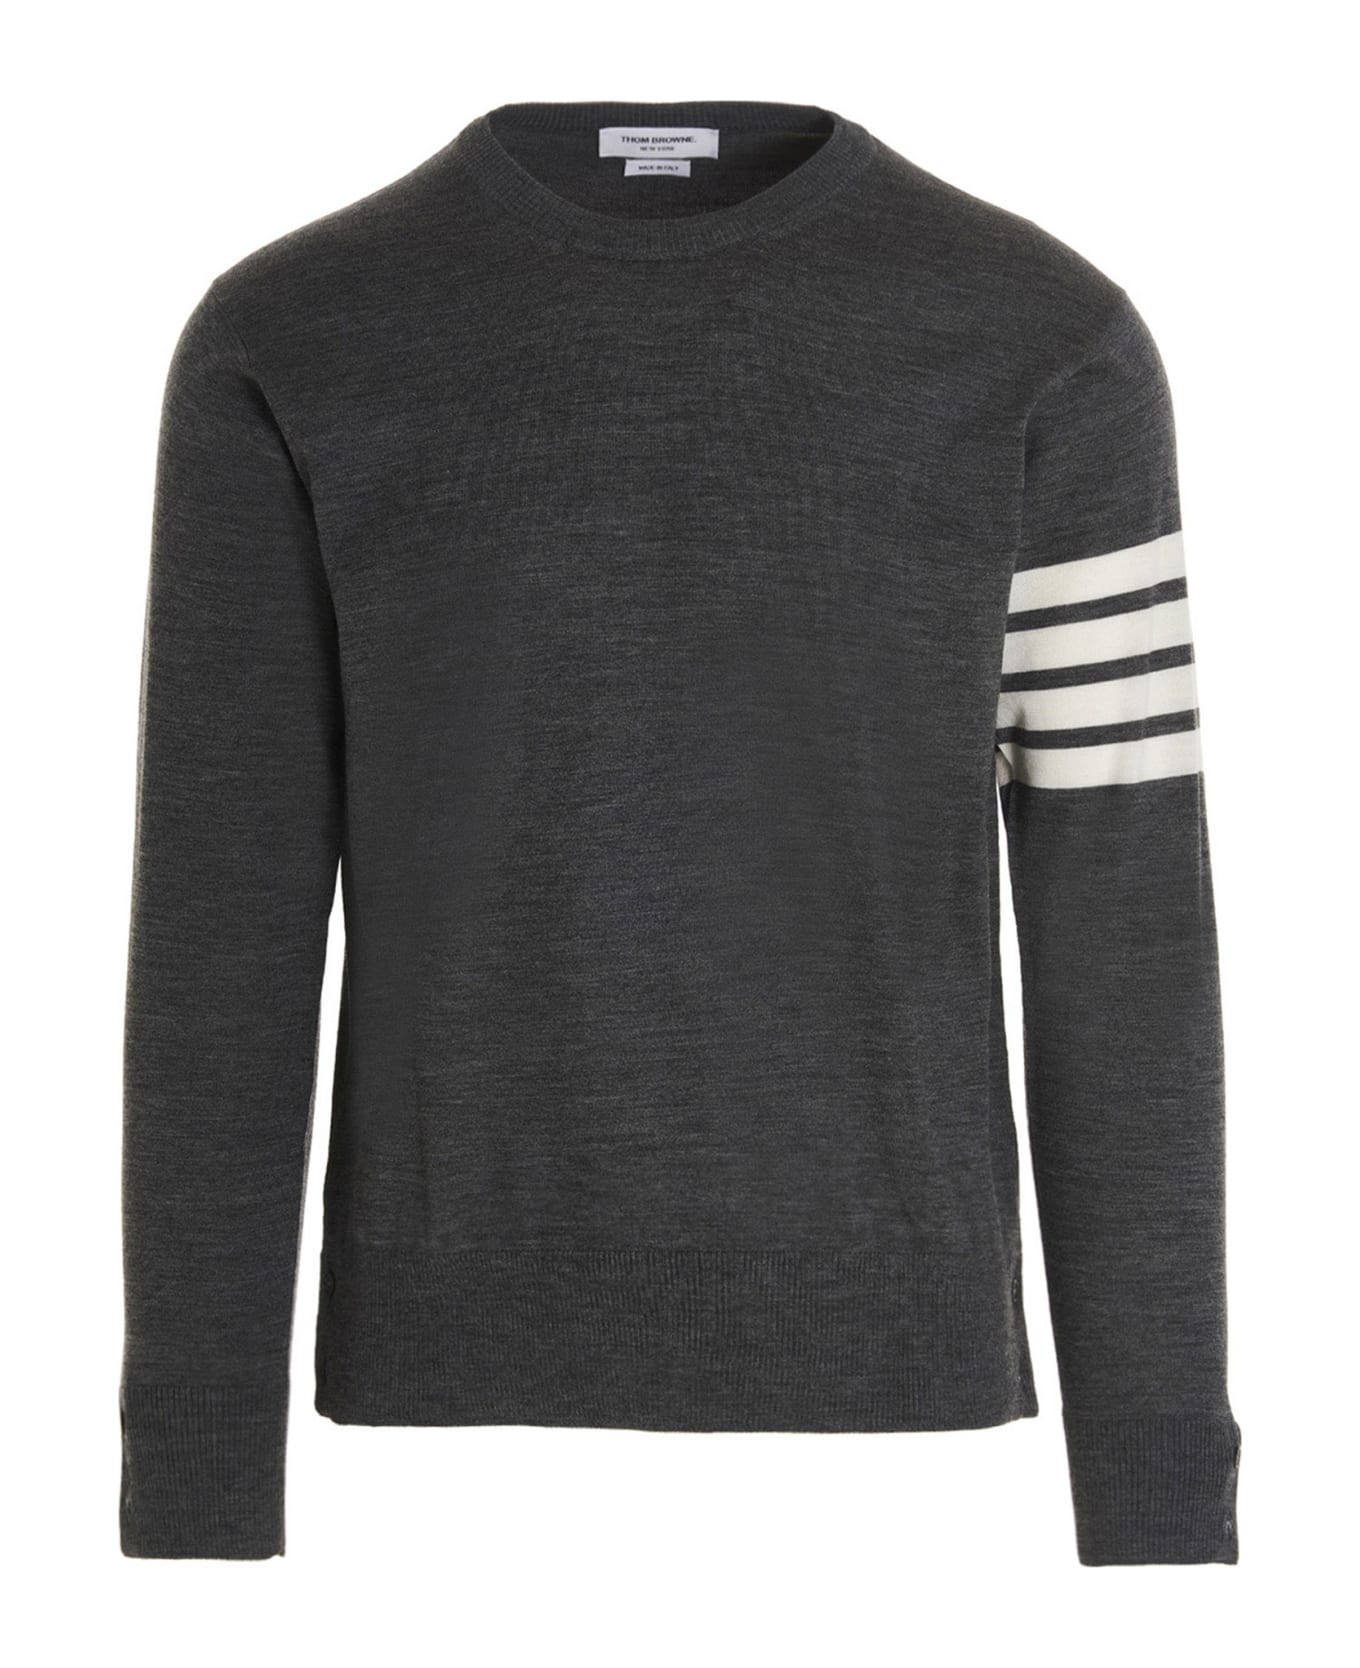 Thom Browne '4 Bar' Sweater - Med Grey ニットウェア